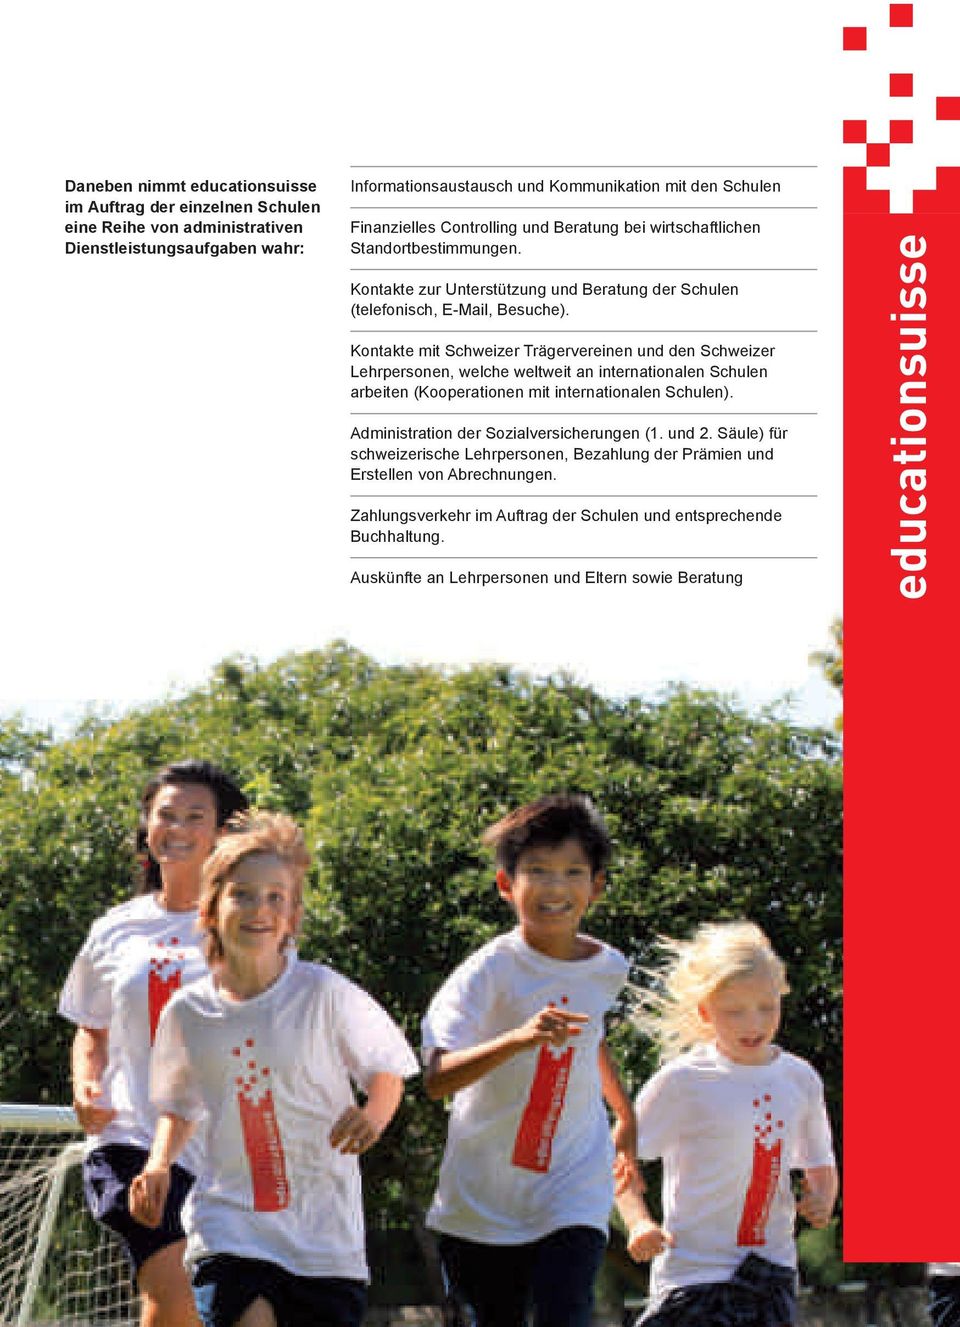 Kontakte mit Schweizer Trägervereinen und den Schweizer Lehrpersonen, welche weltweit an internationalen Schulen arbeiten (Kooperationen mit internationalen Schulen).